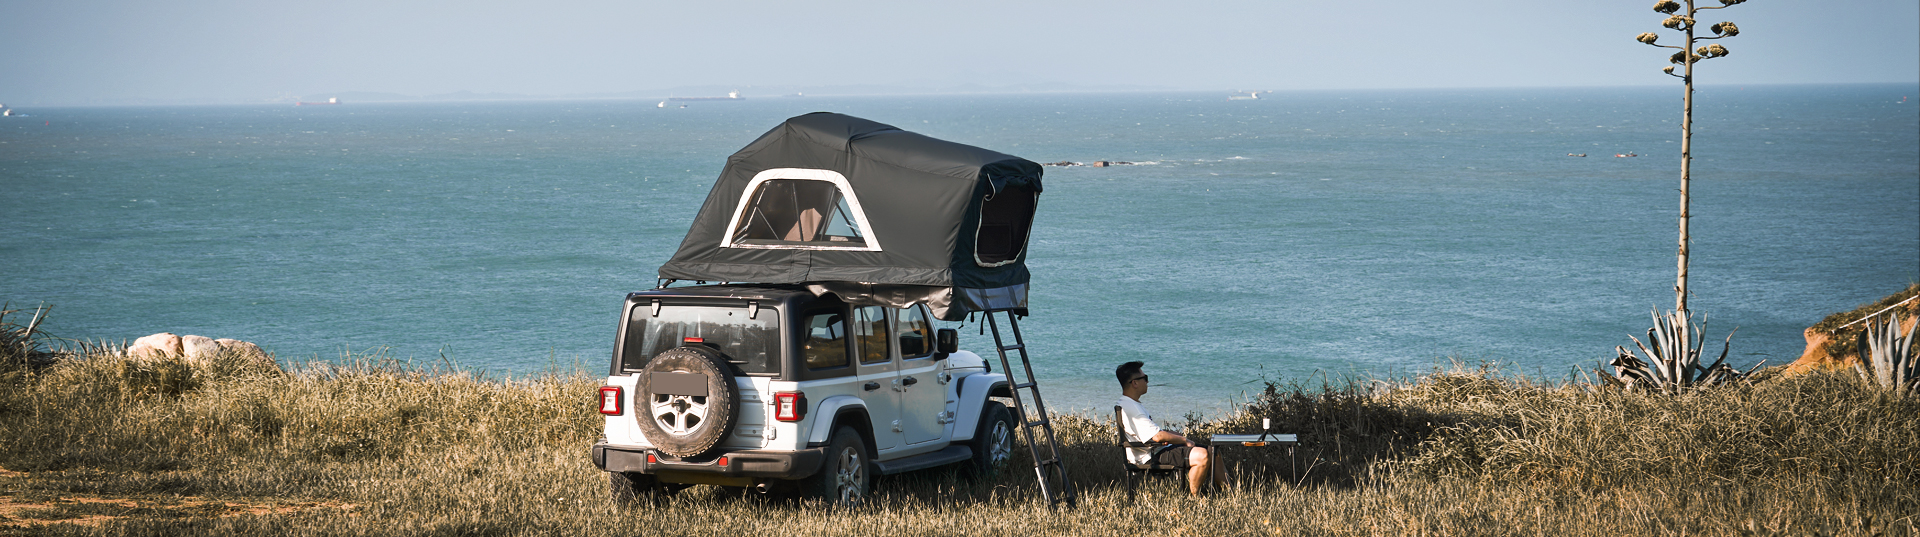 road-trip-car-tent-outdoor